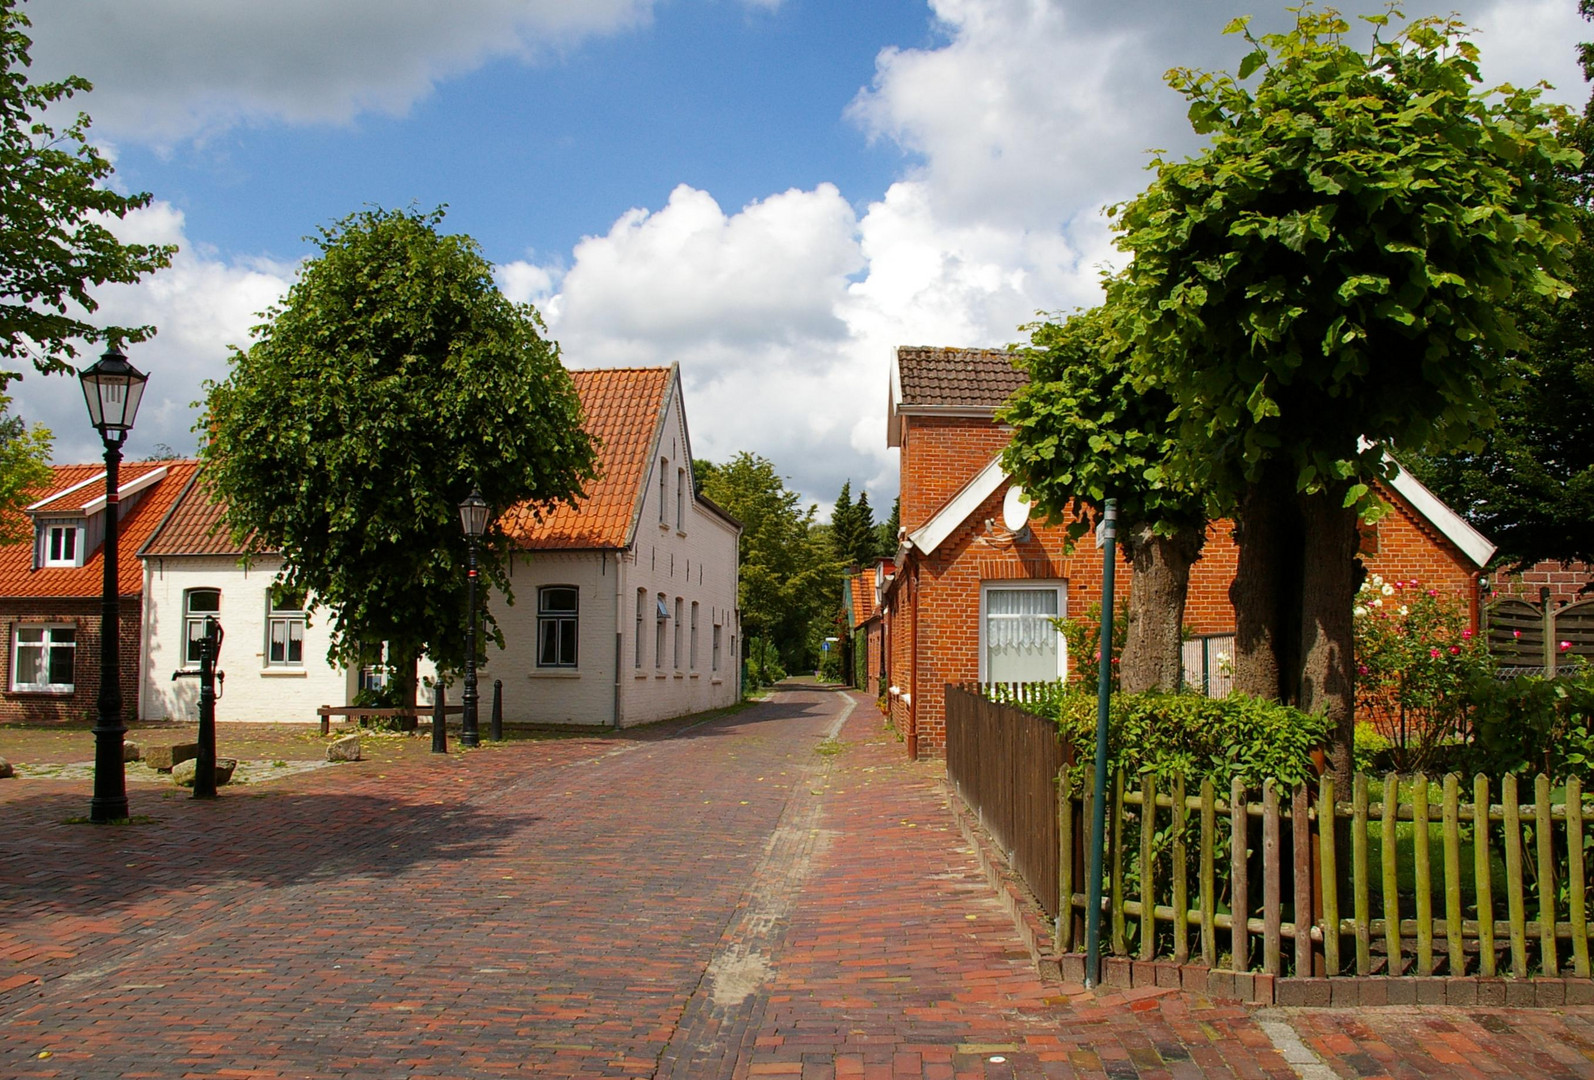 Dornum in Ostfriesland